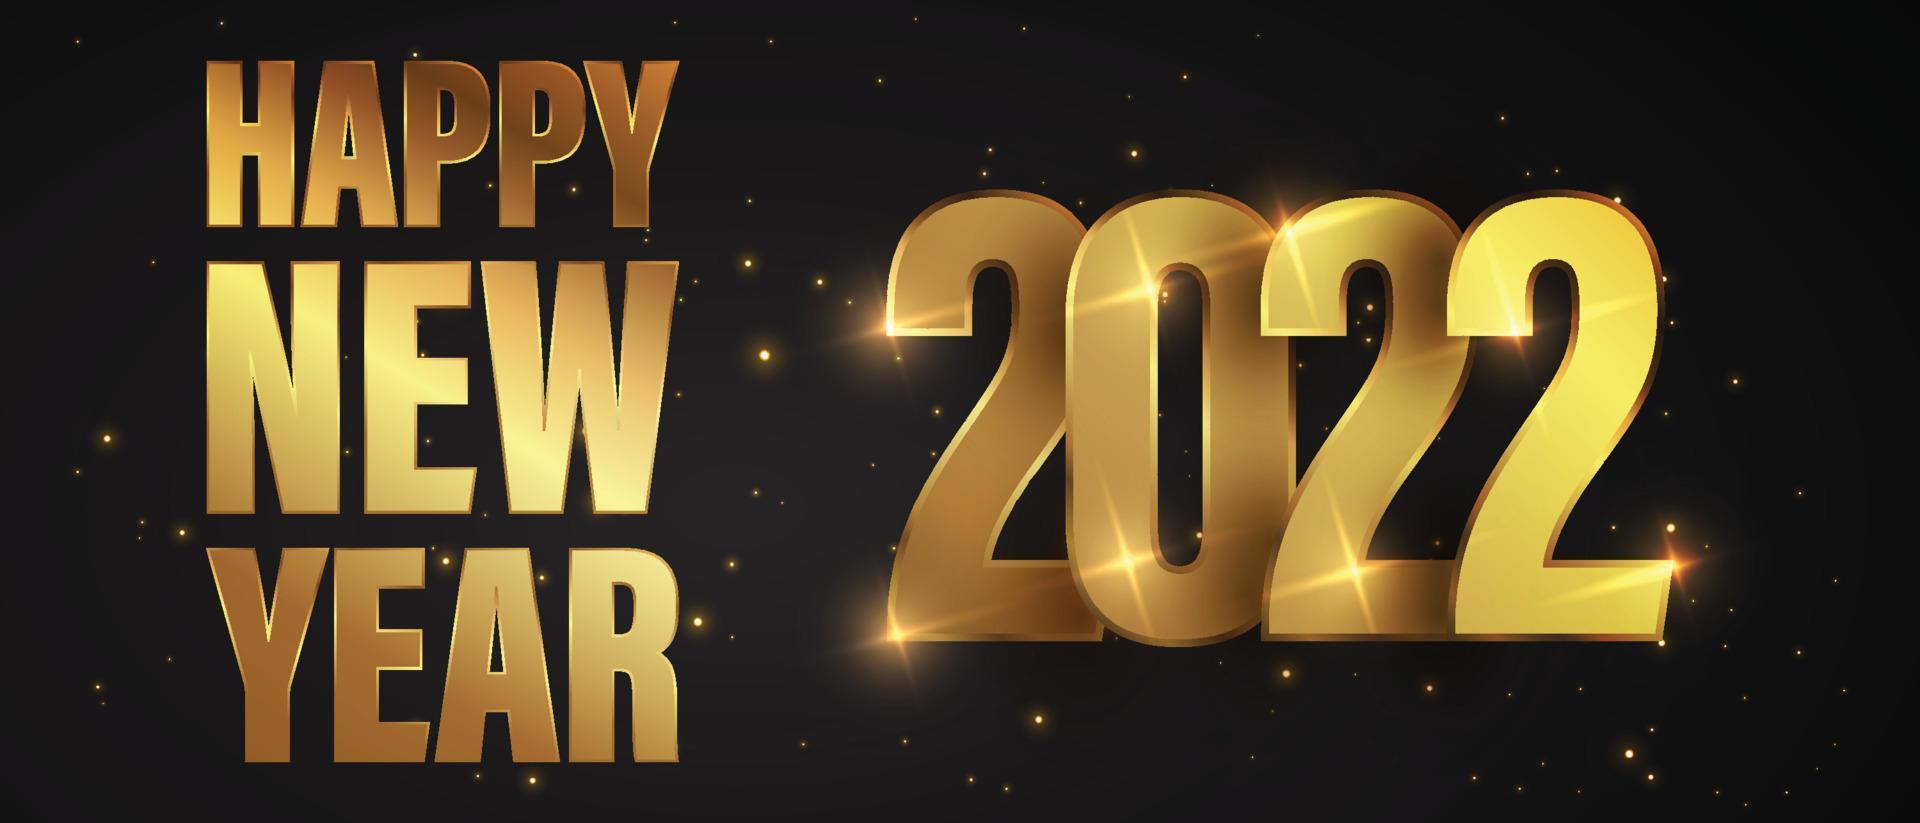 feliz año nuevo de fuegos artificiales dorados brillantes. texto brillante vectorial dorado y números 2022 con brillo brillante para la tarjeta de felicitación navideña vector